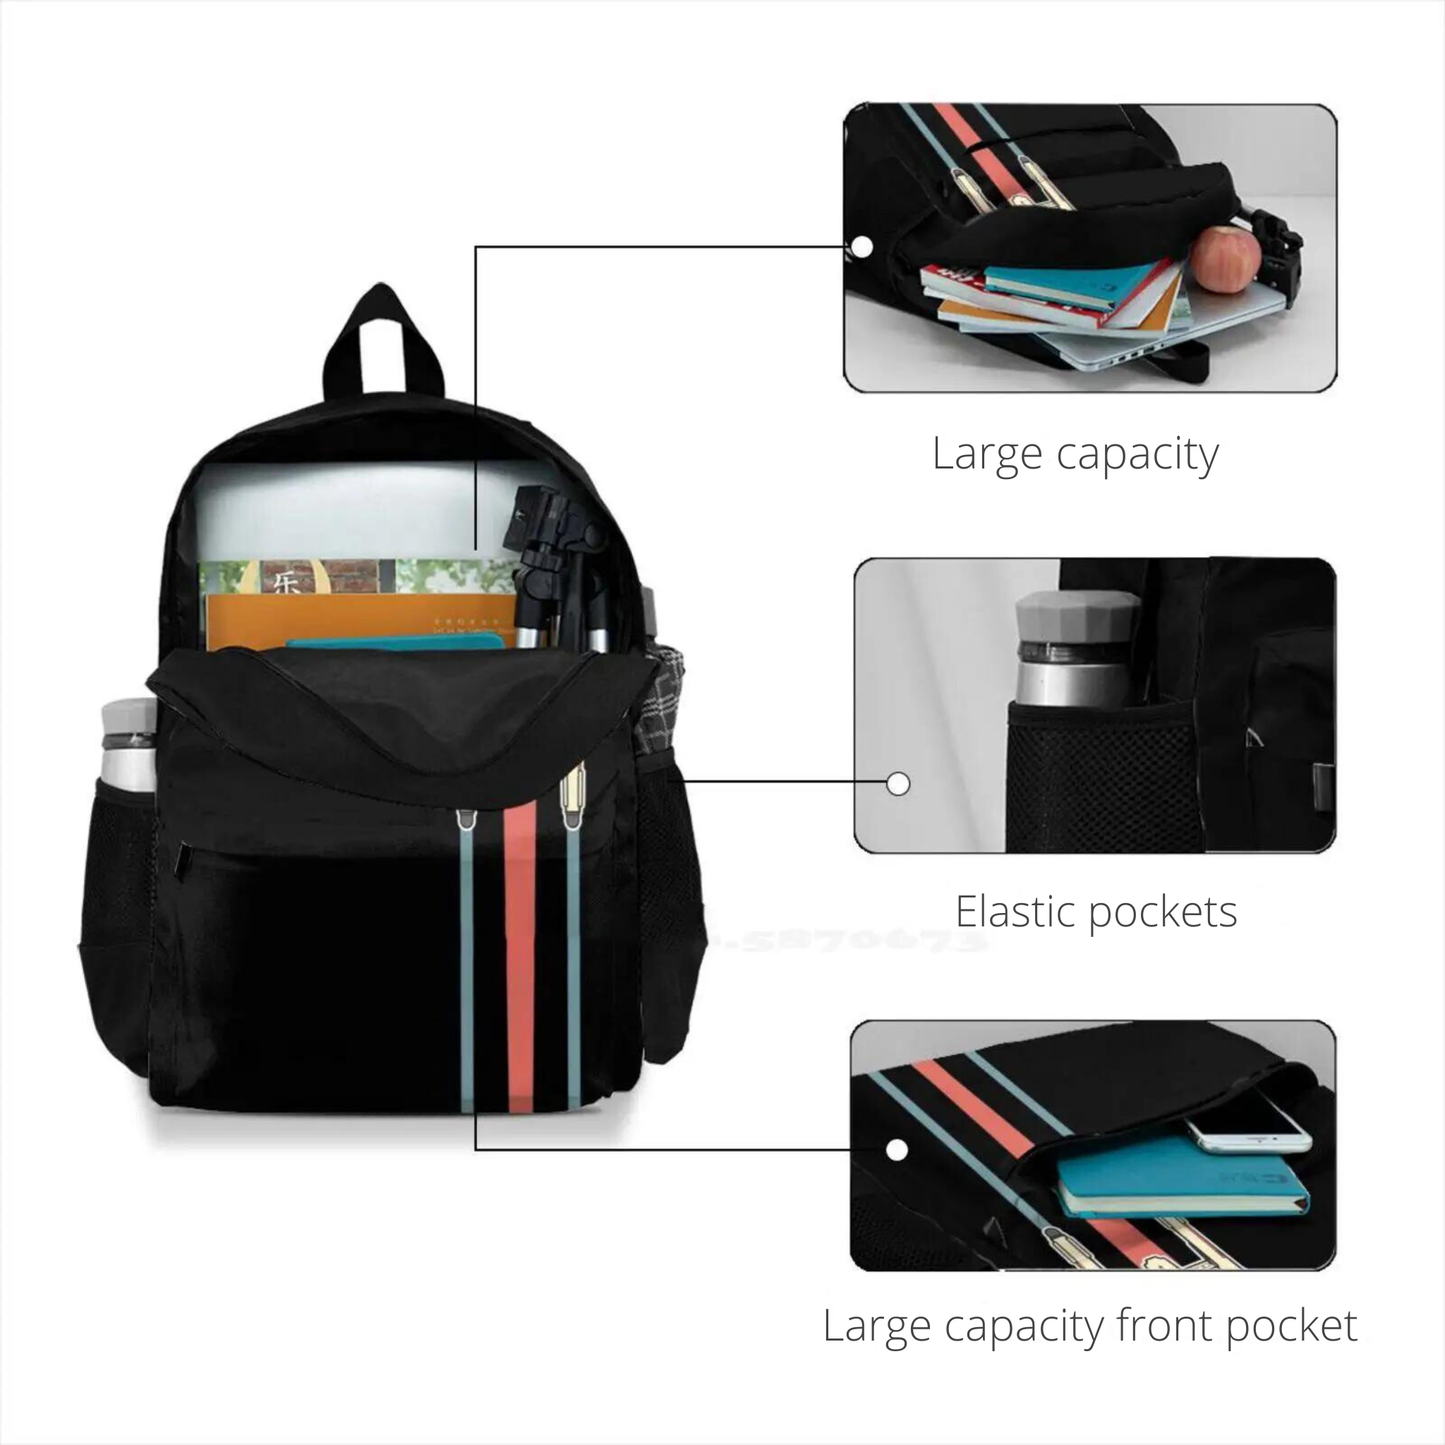 Star Trek USS Enterprise Polyester Backpack or Drawstring Bag